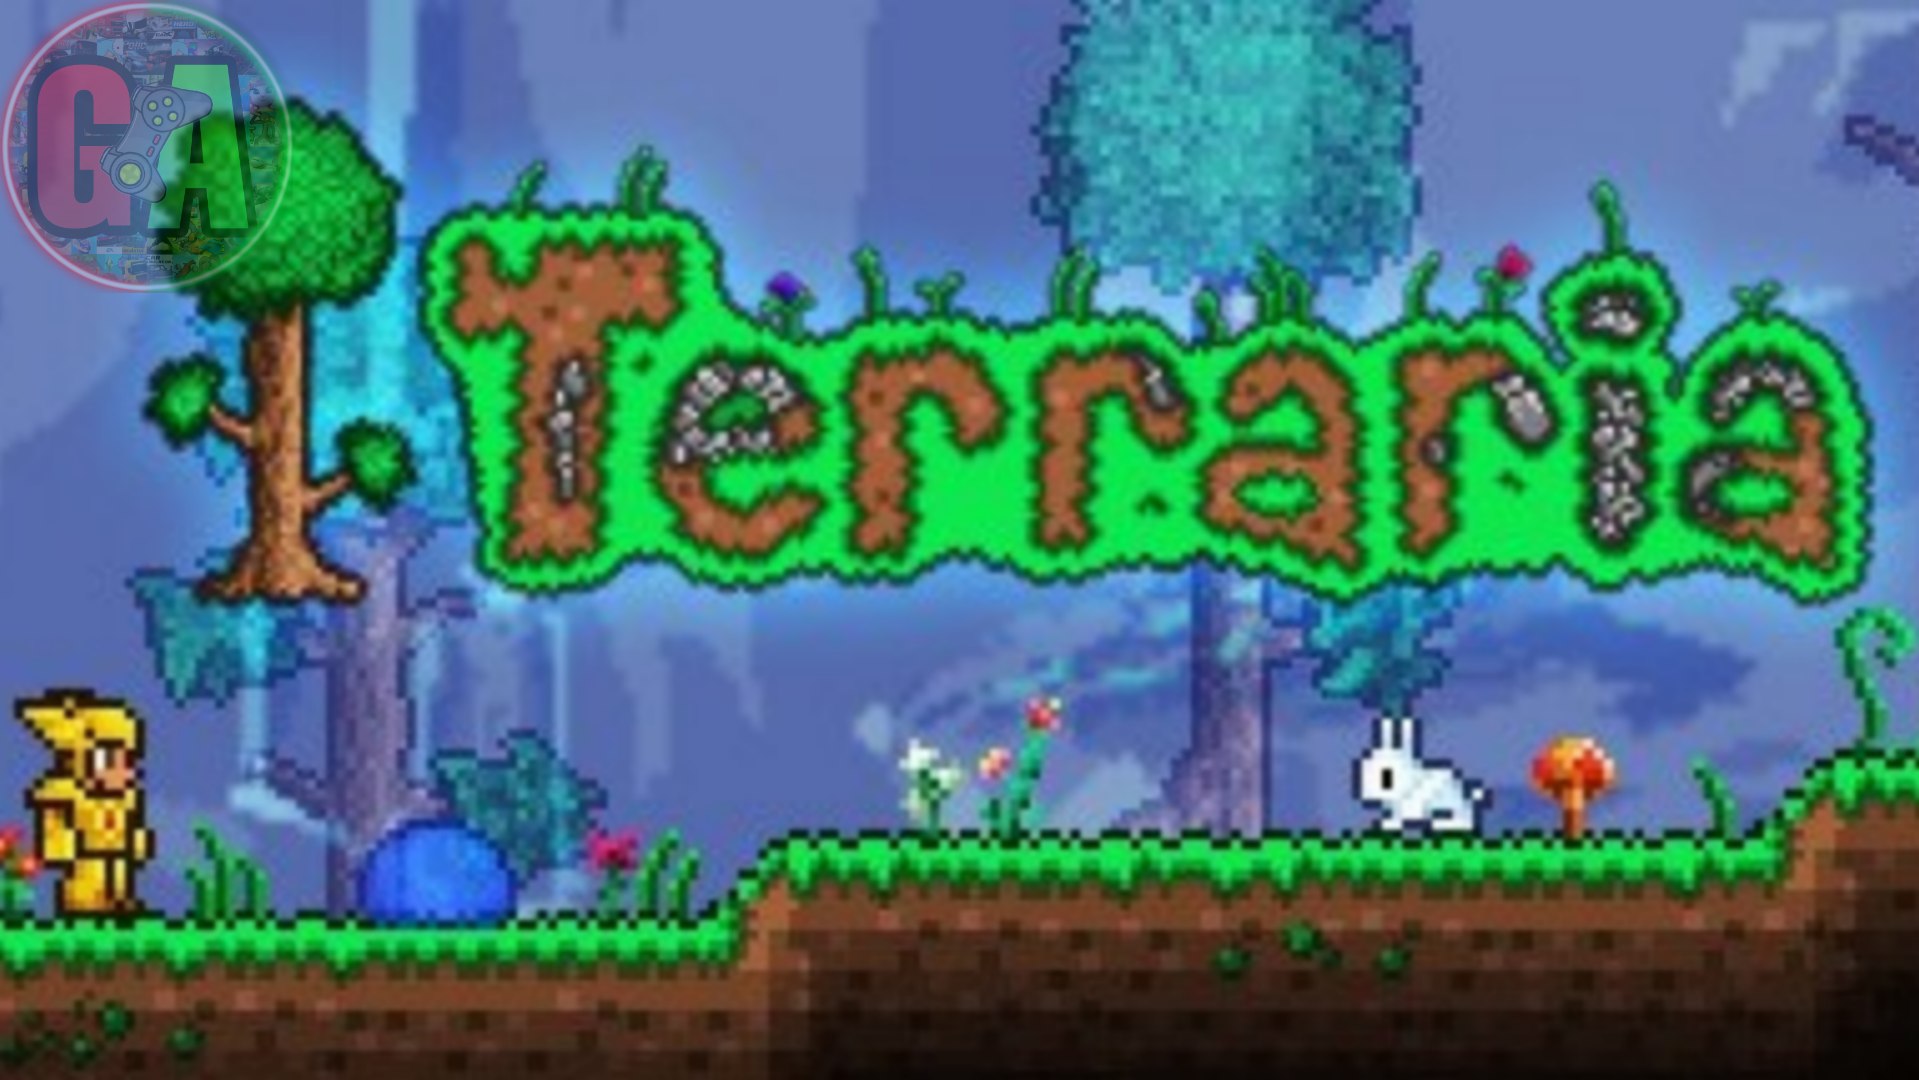 terraria 1.4.4.9.2 download